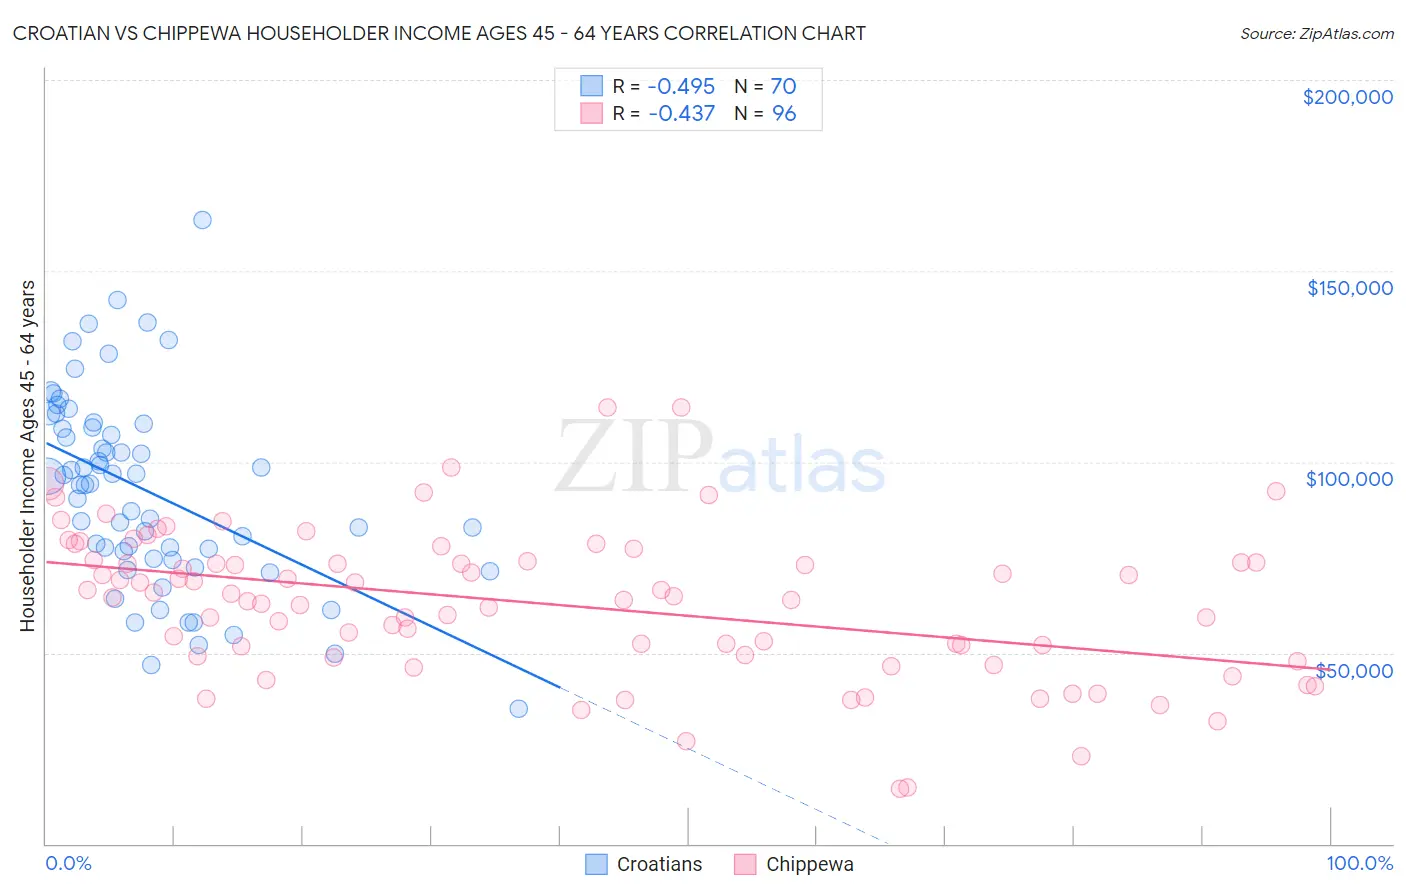 Croatian vs Chippewa Householder Income Ages 45 - 64 years